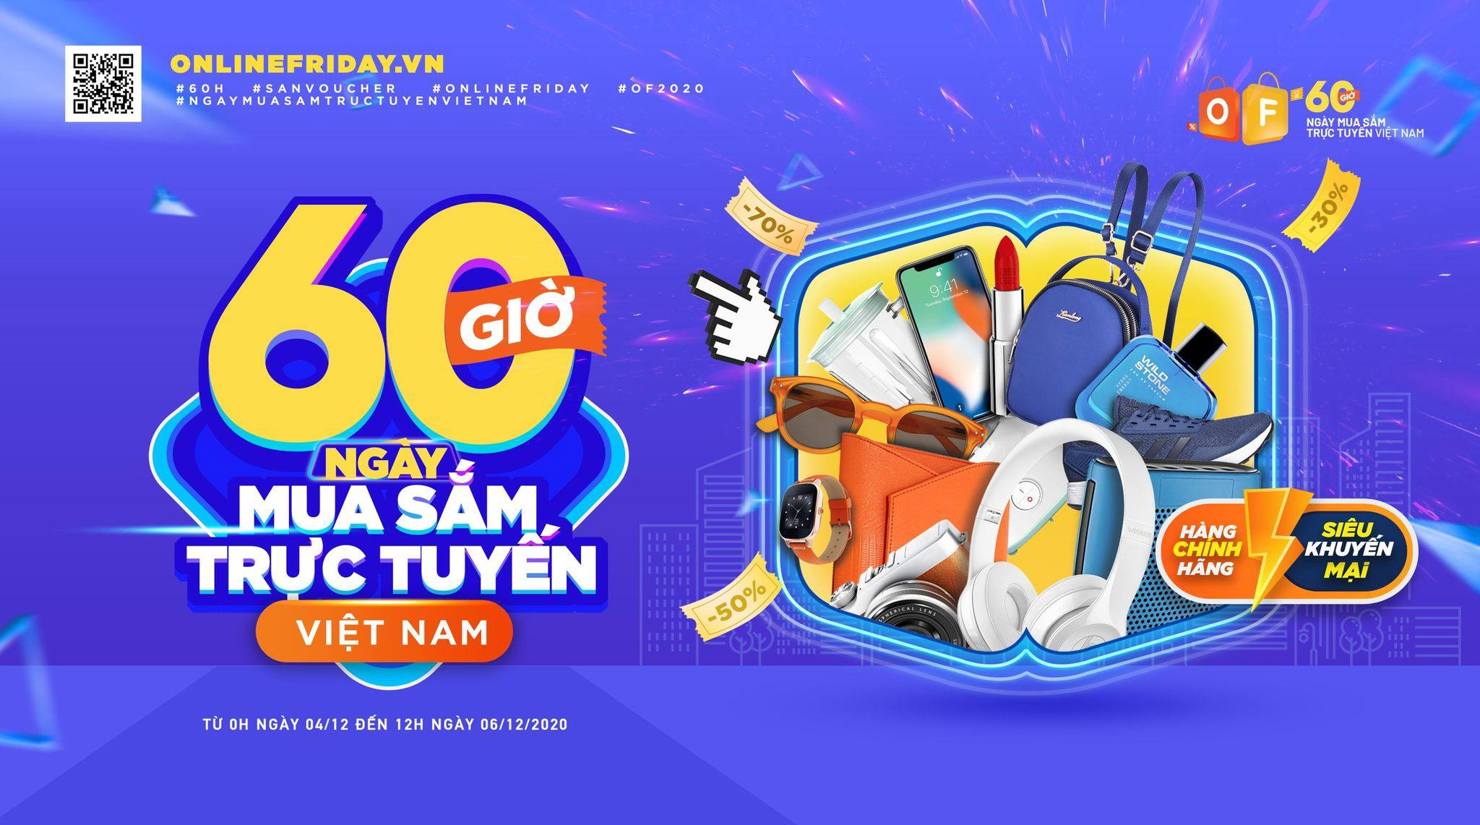 Sẵn sàng chờ đón 60 ngày mua sắm trực tuyến lớn nhất Việt Nam bắt đầu từ ngày 4/12/2020.